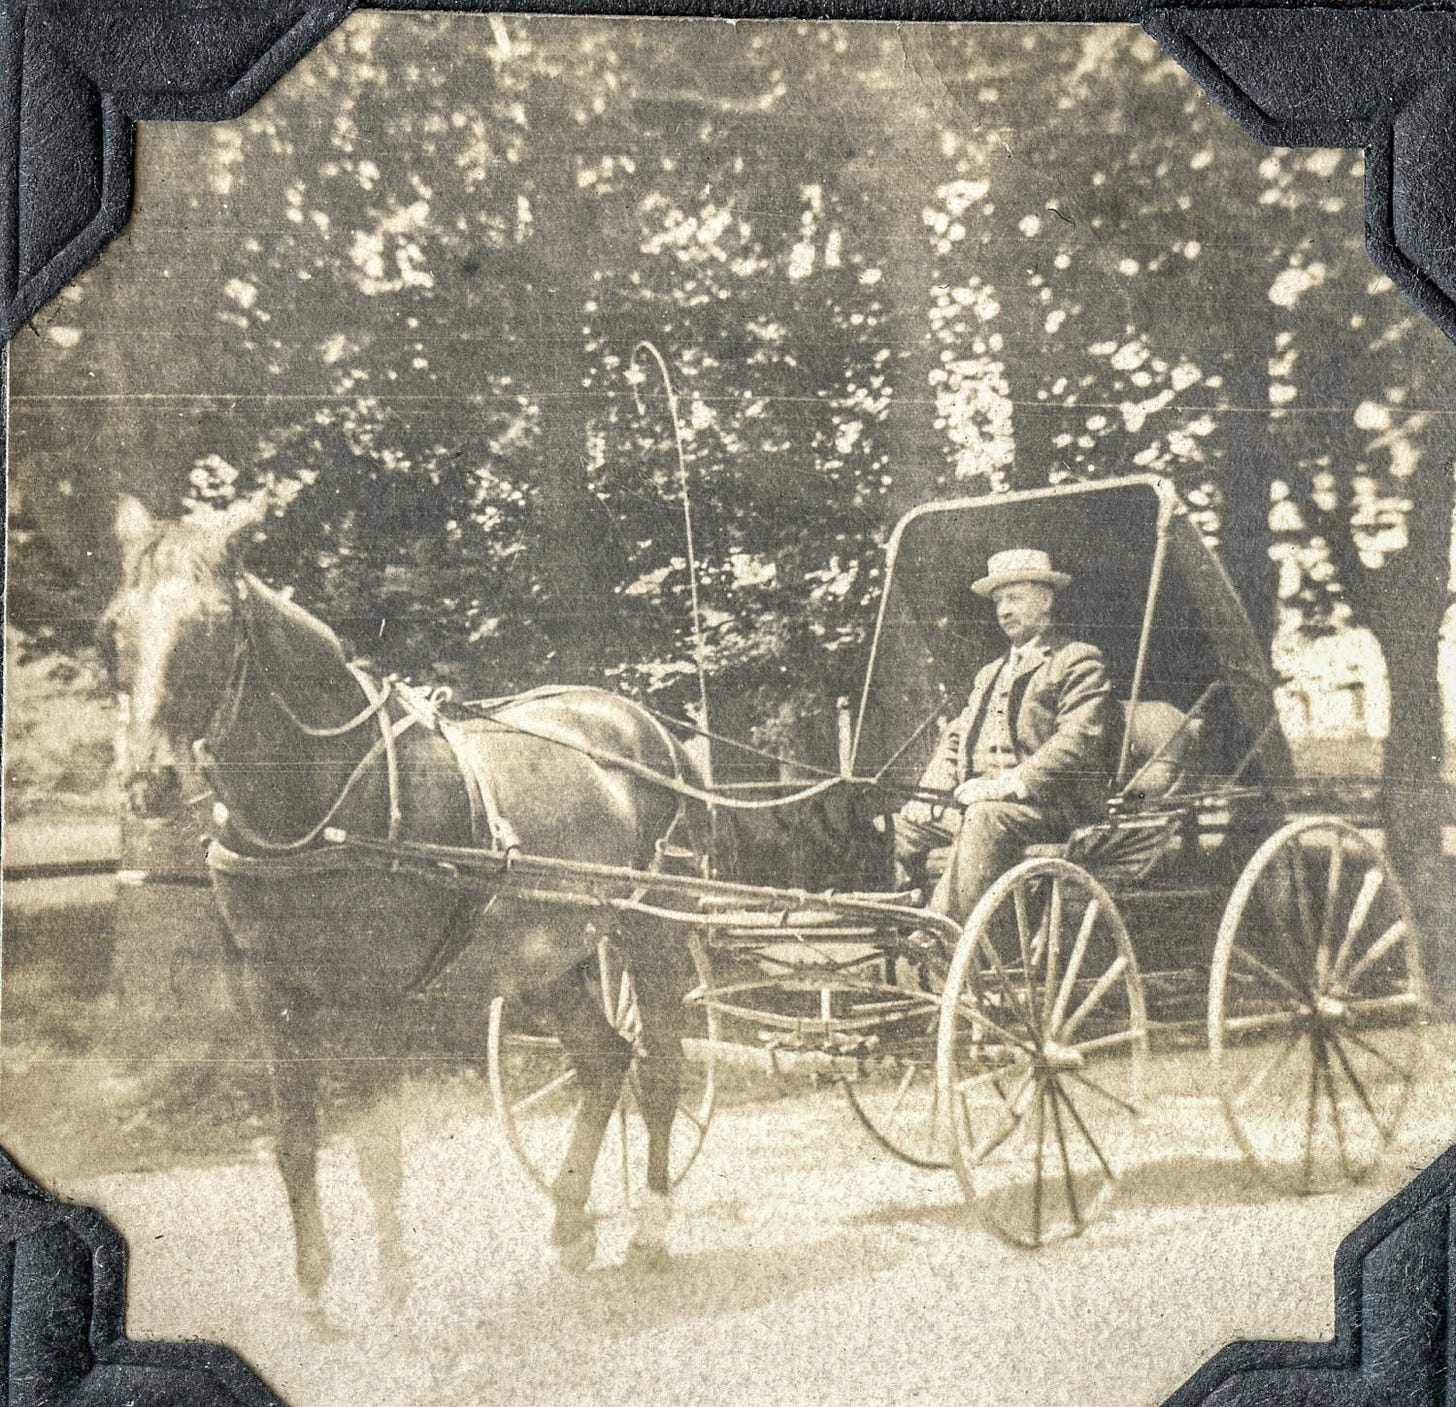 Dr. Jones in carriage